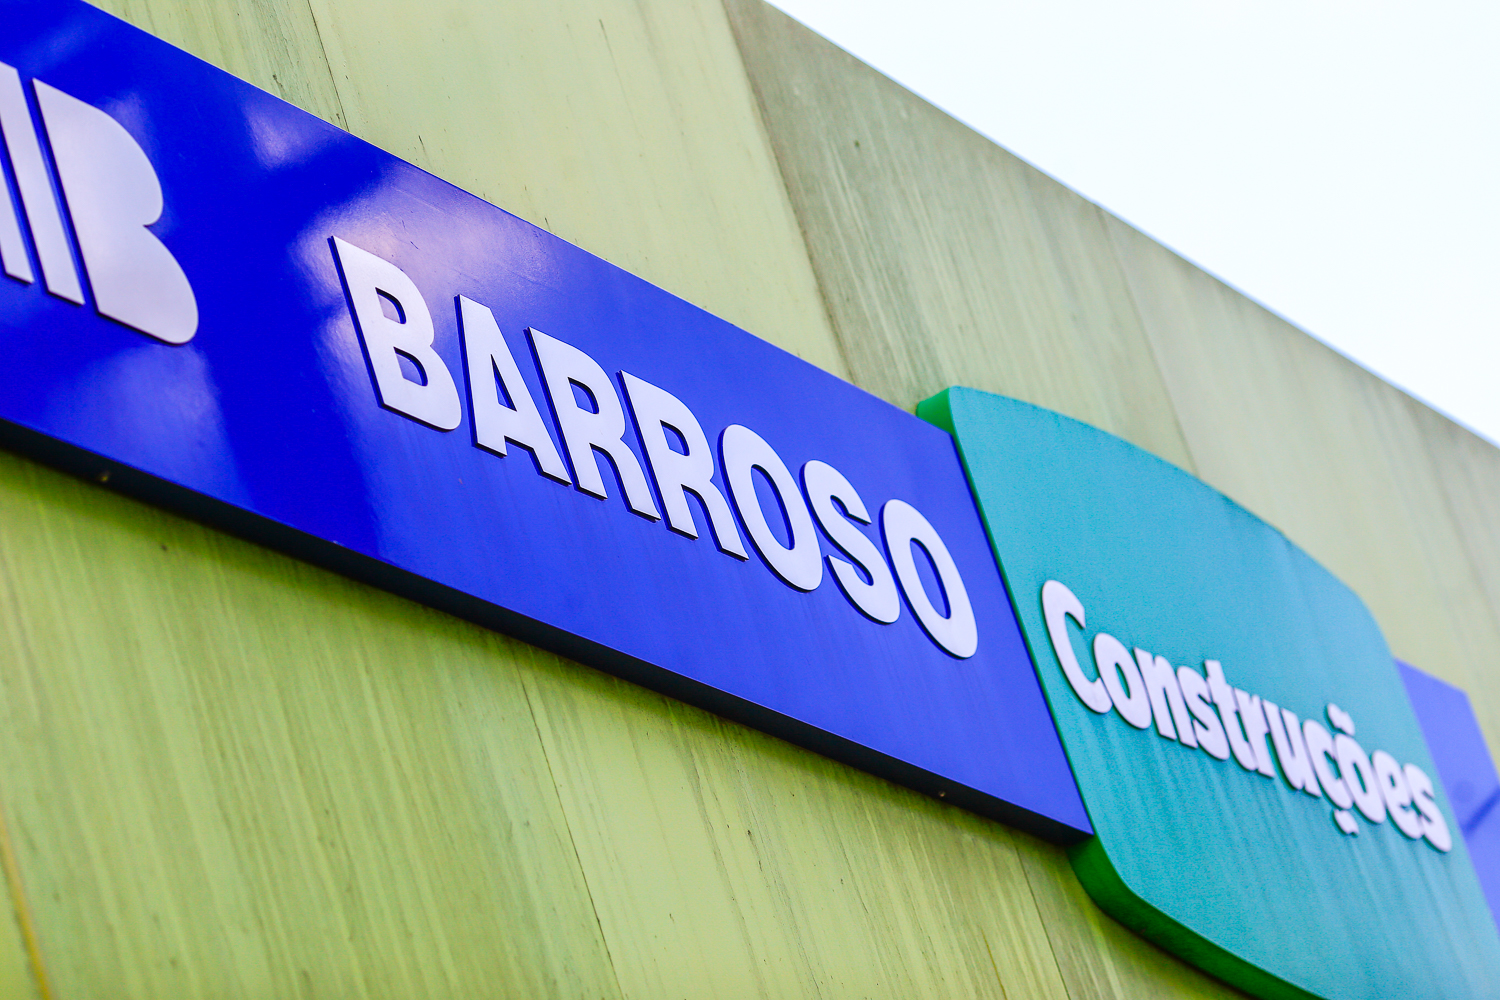 Barroso Construções